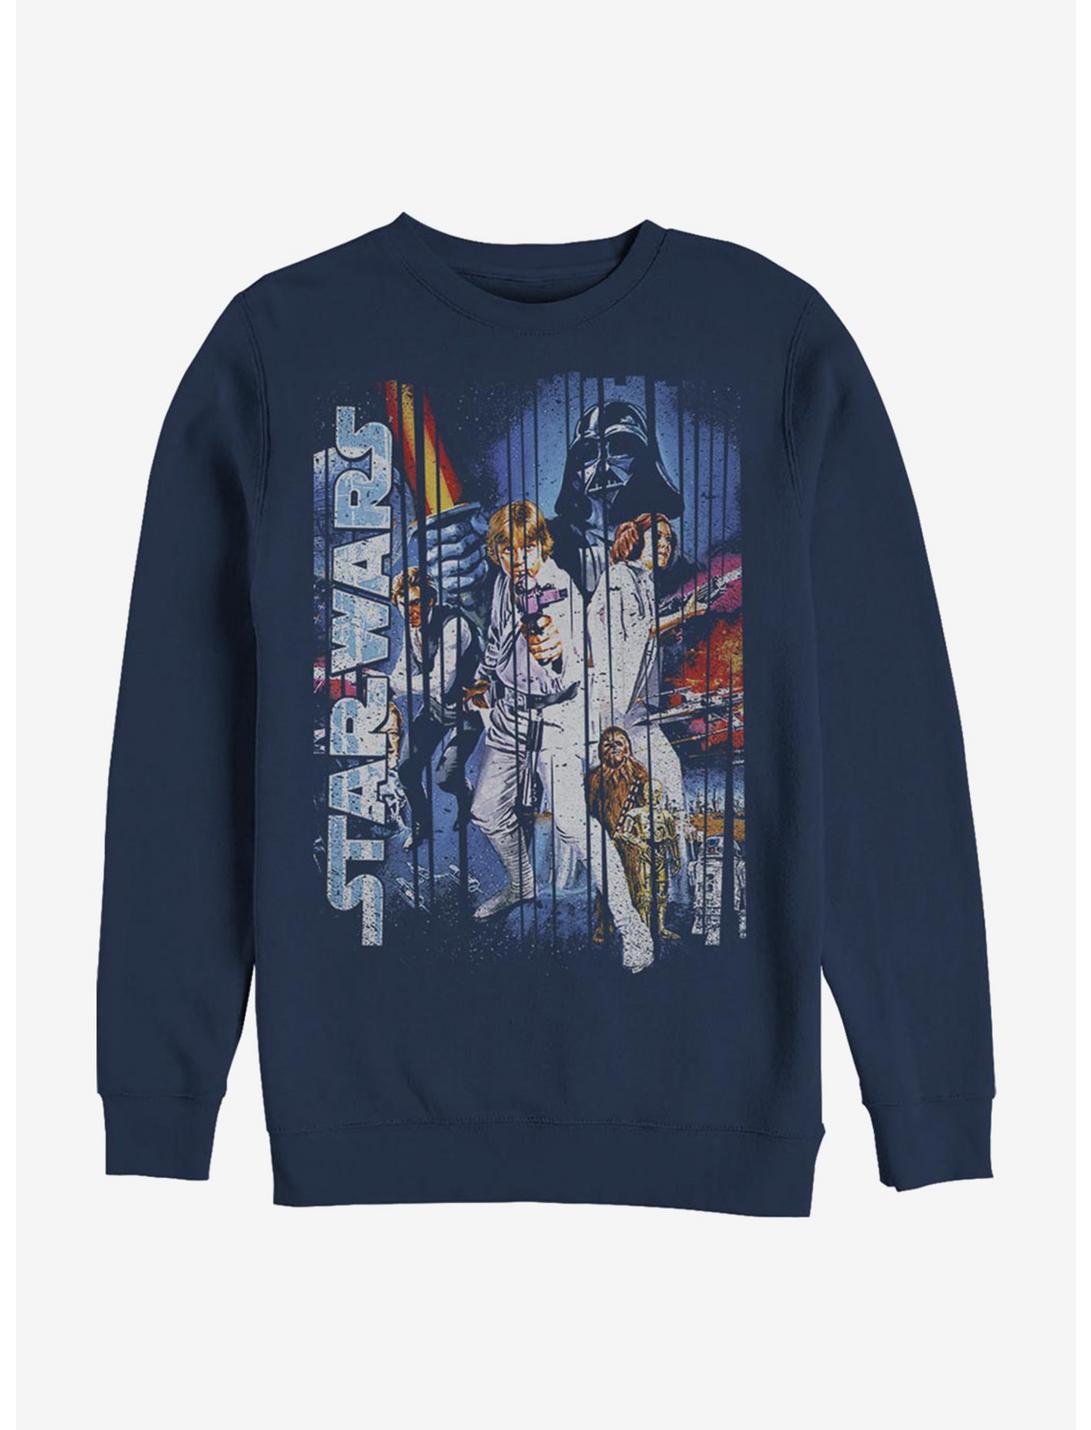 Star Wars Classic Scene Crew Sweatshirt, NAVY, hi-res